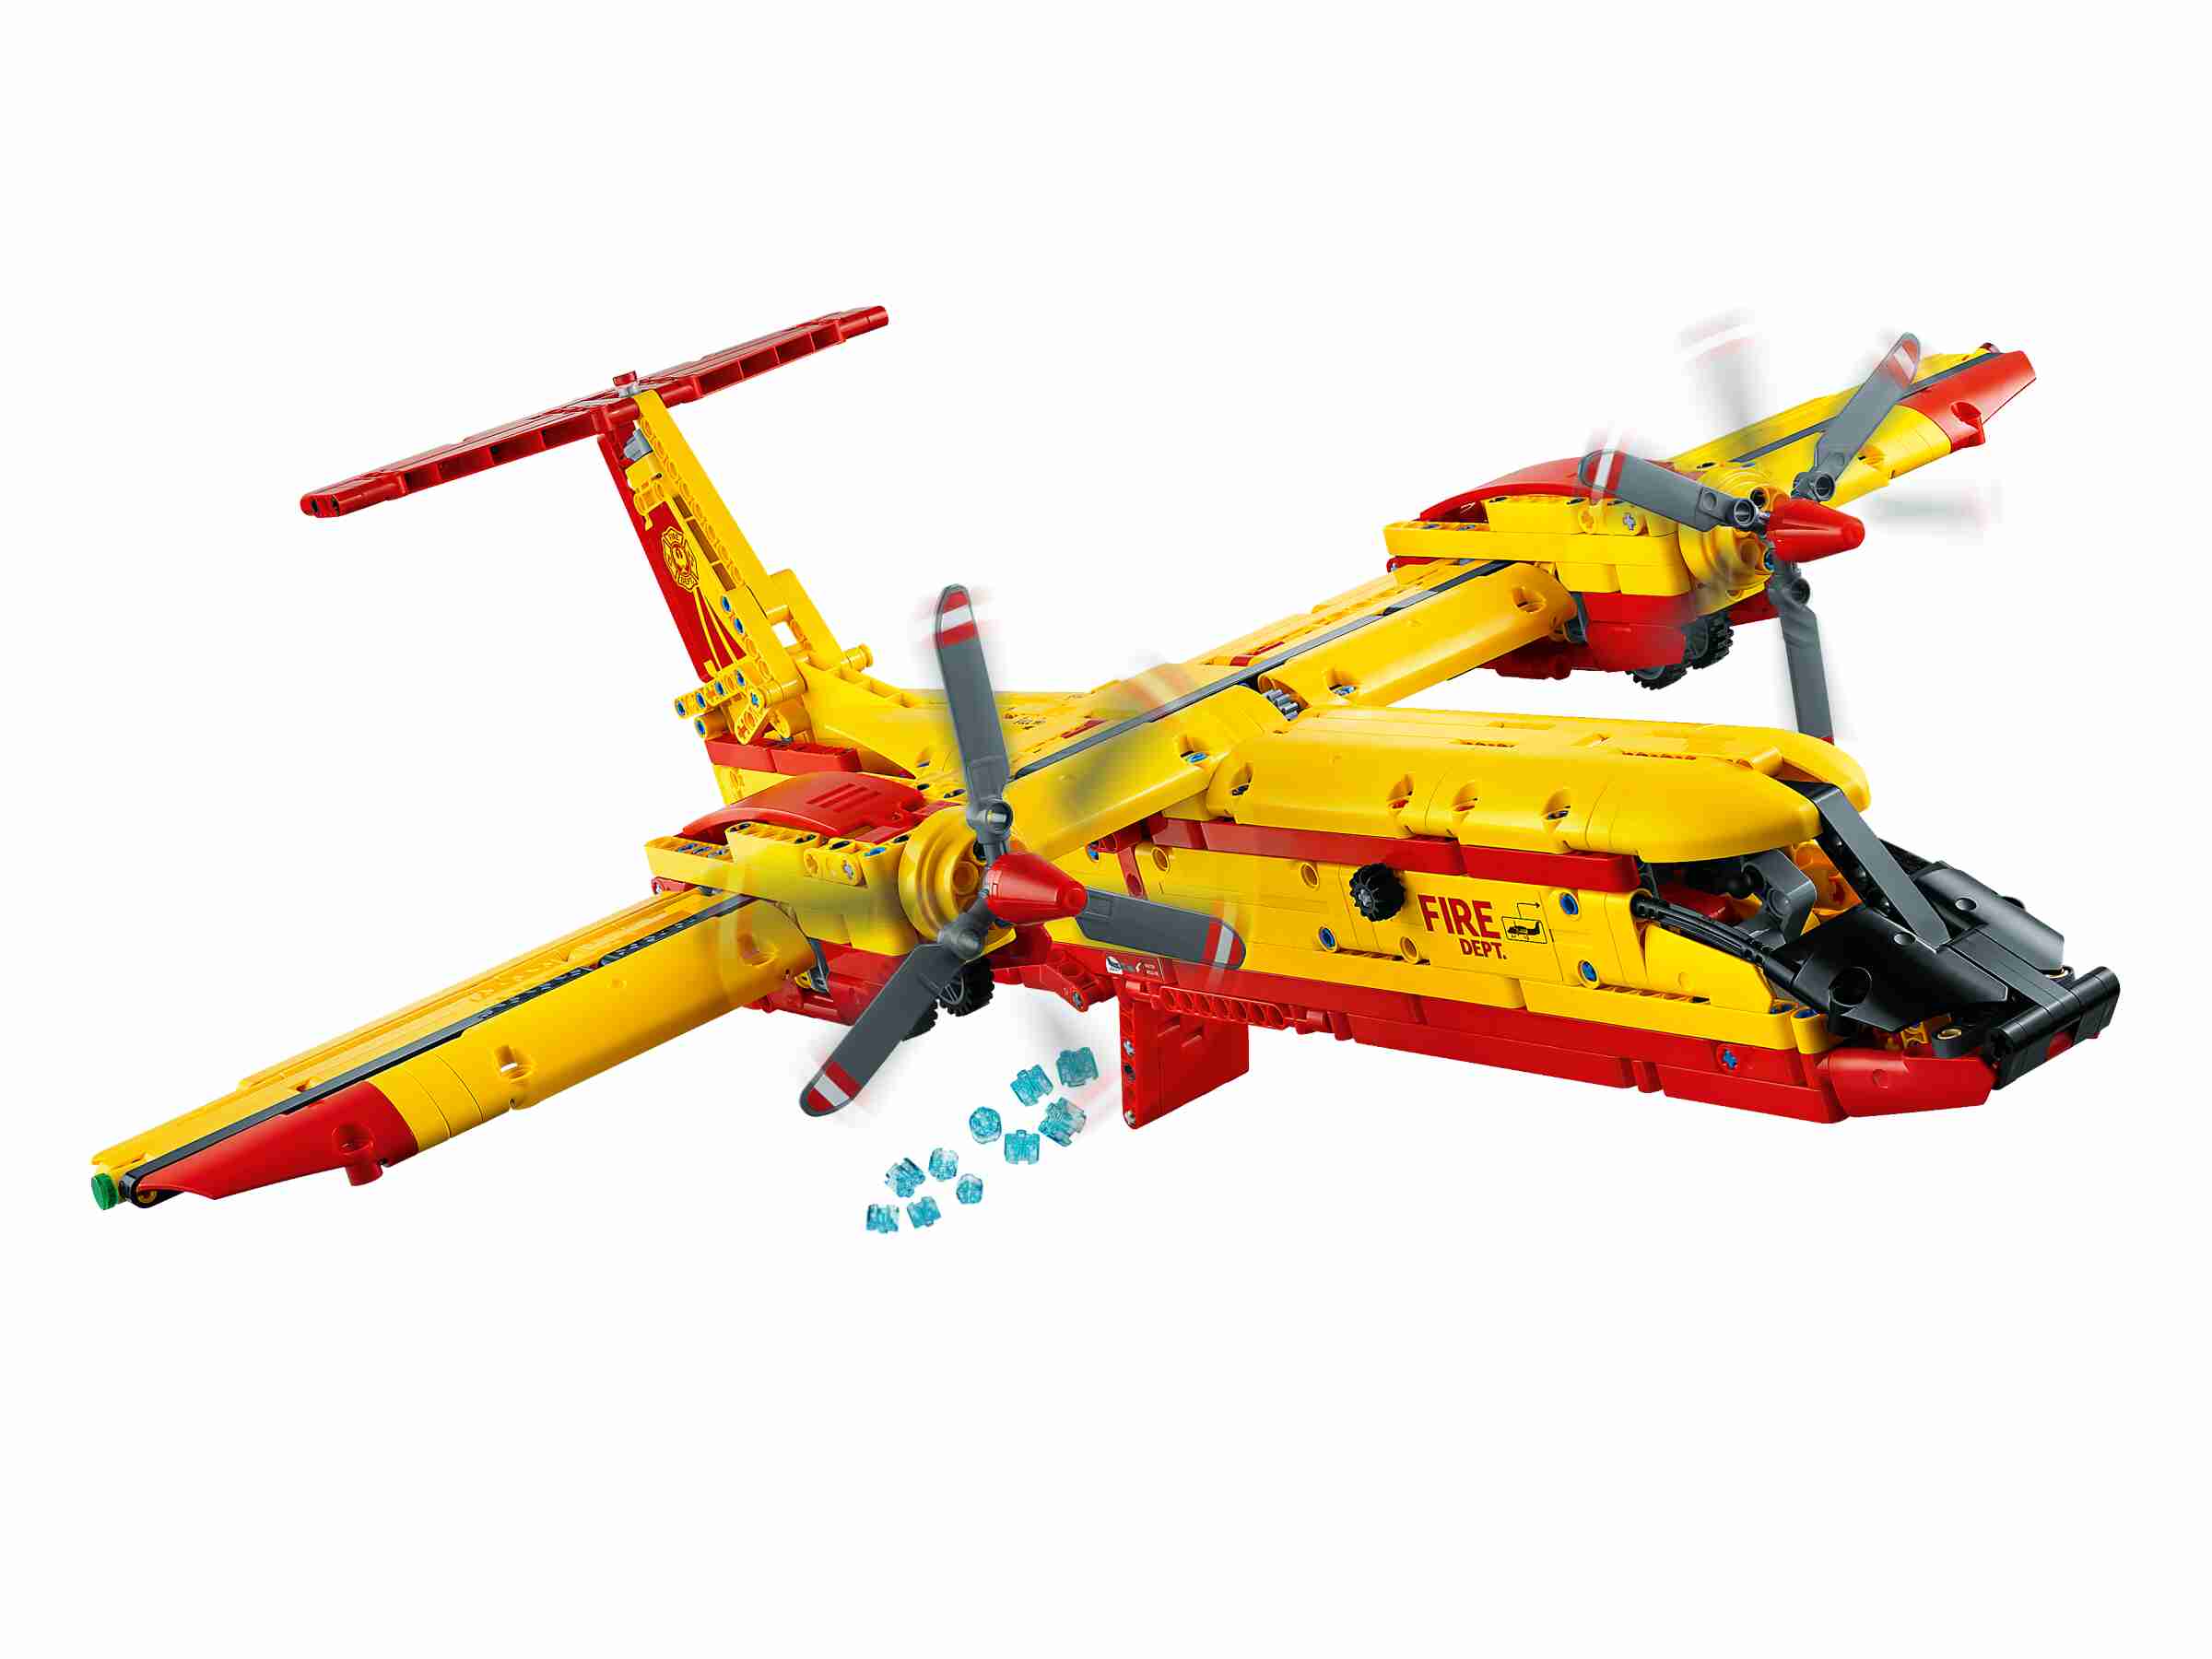 LEGO Technic 42152 Löschflugzeug der Feuerwehr mit Motor und Löschfunktion